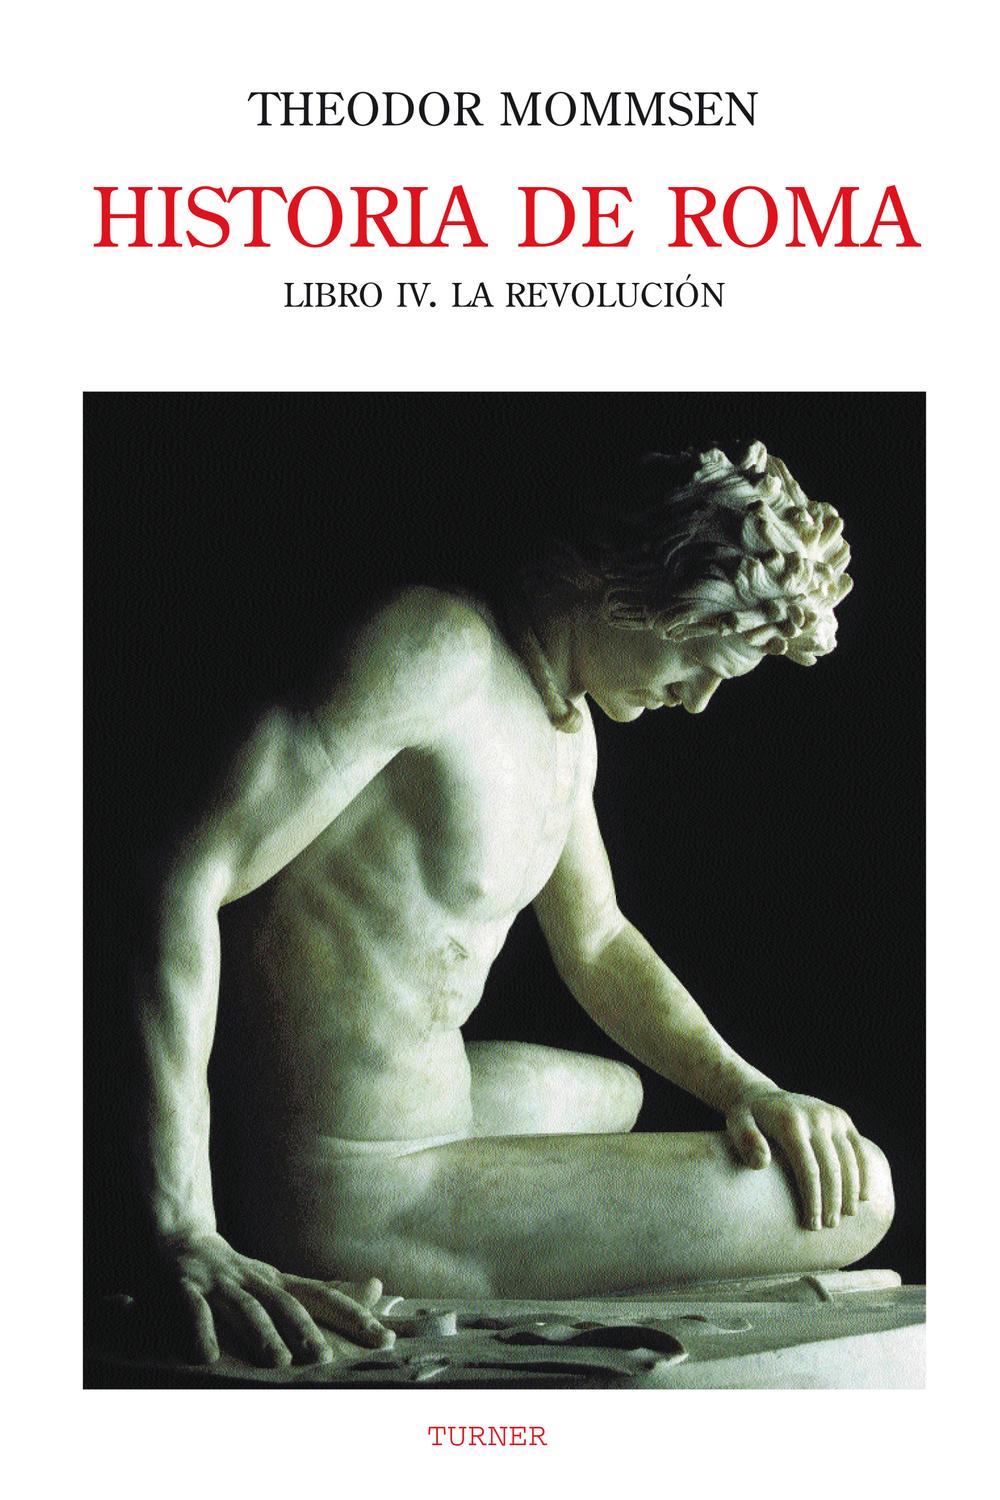 Historia de Roma. Libro IV - Theodor Mommsen, Enriq Satué